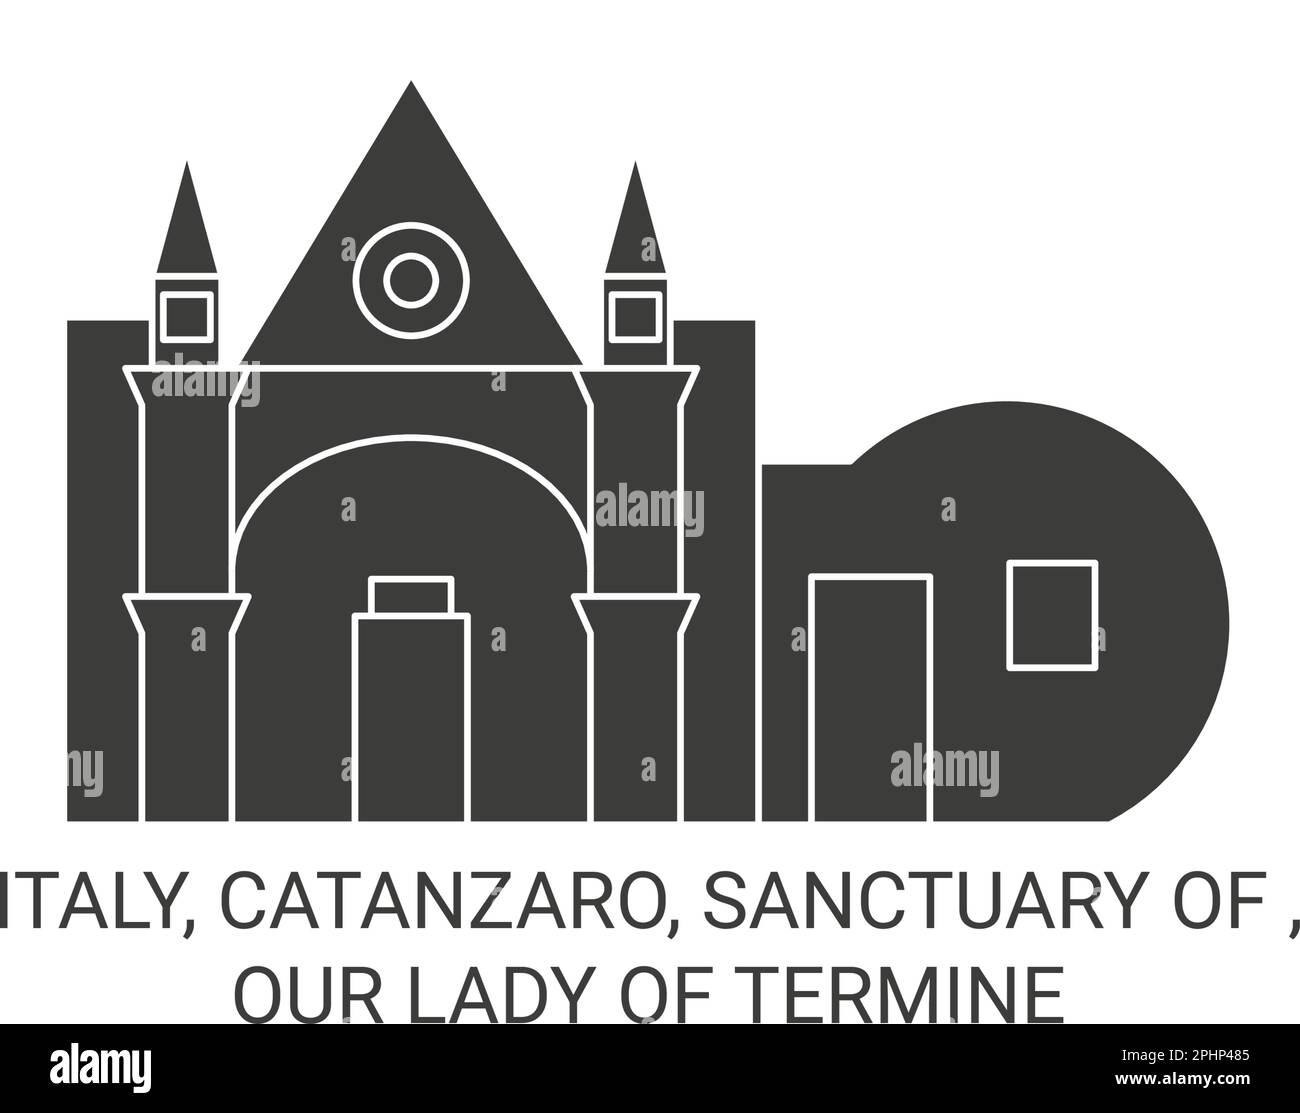 Italie, Catanzaro, Sanctuaire de , notre Dame de Termine Voyage repère illustration vecteur Illustration de Vecteur